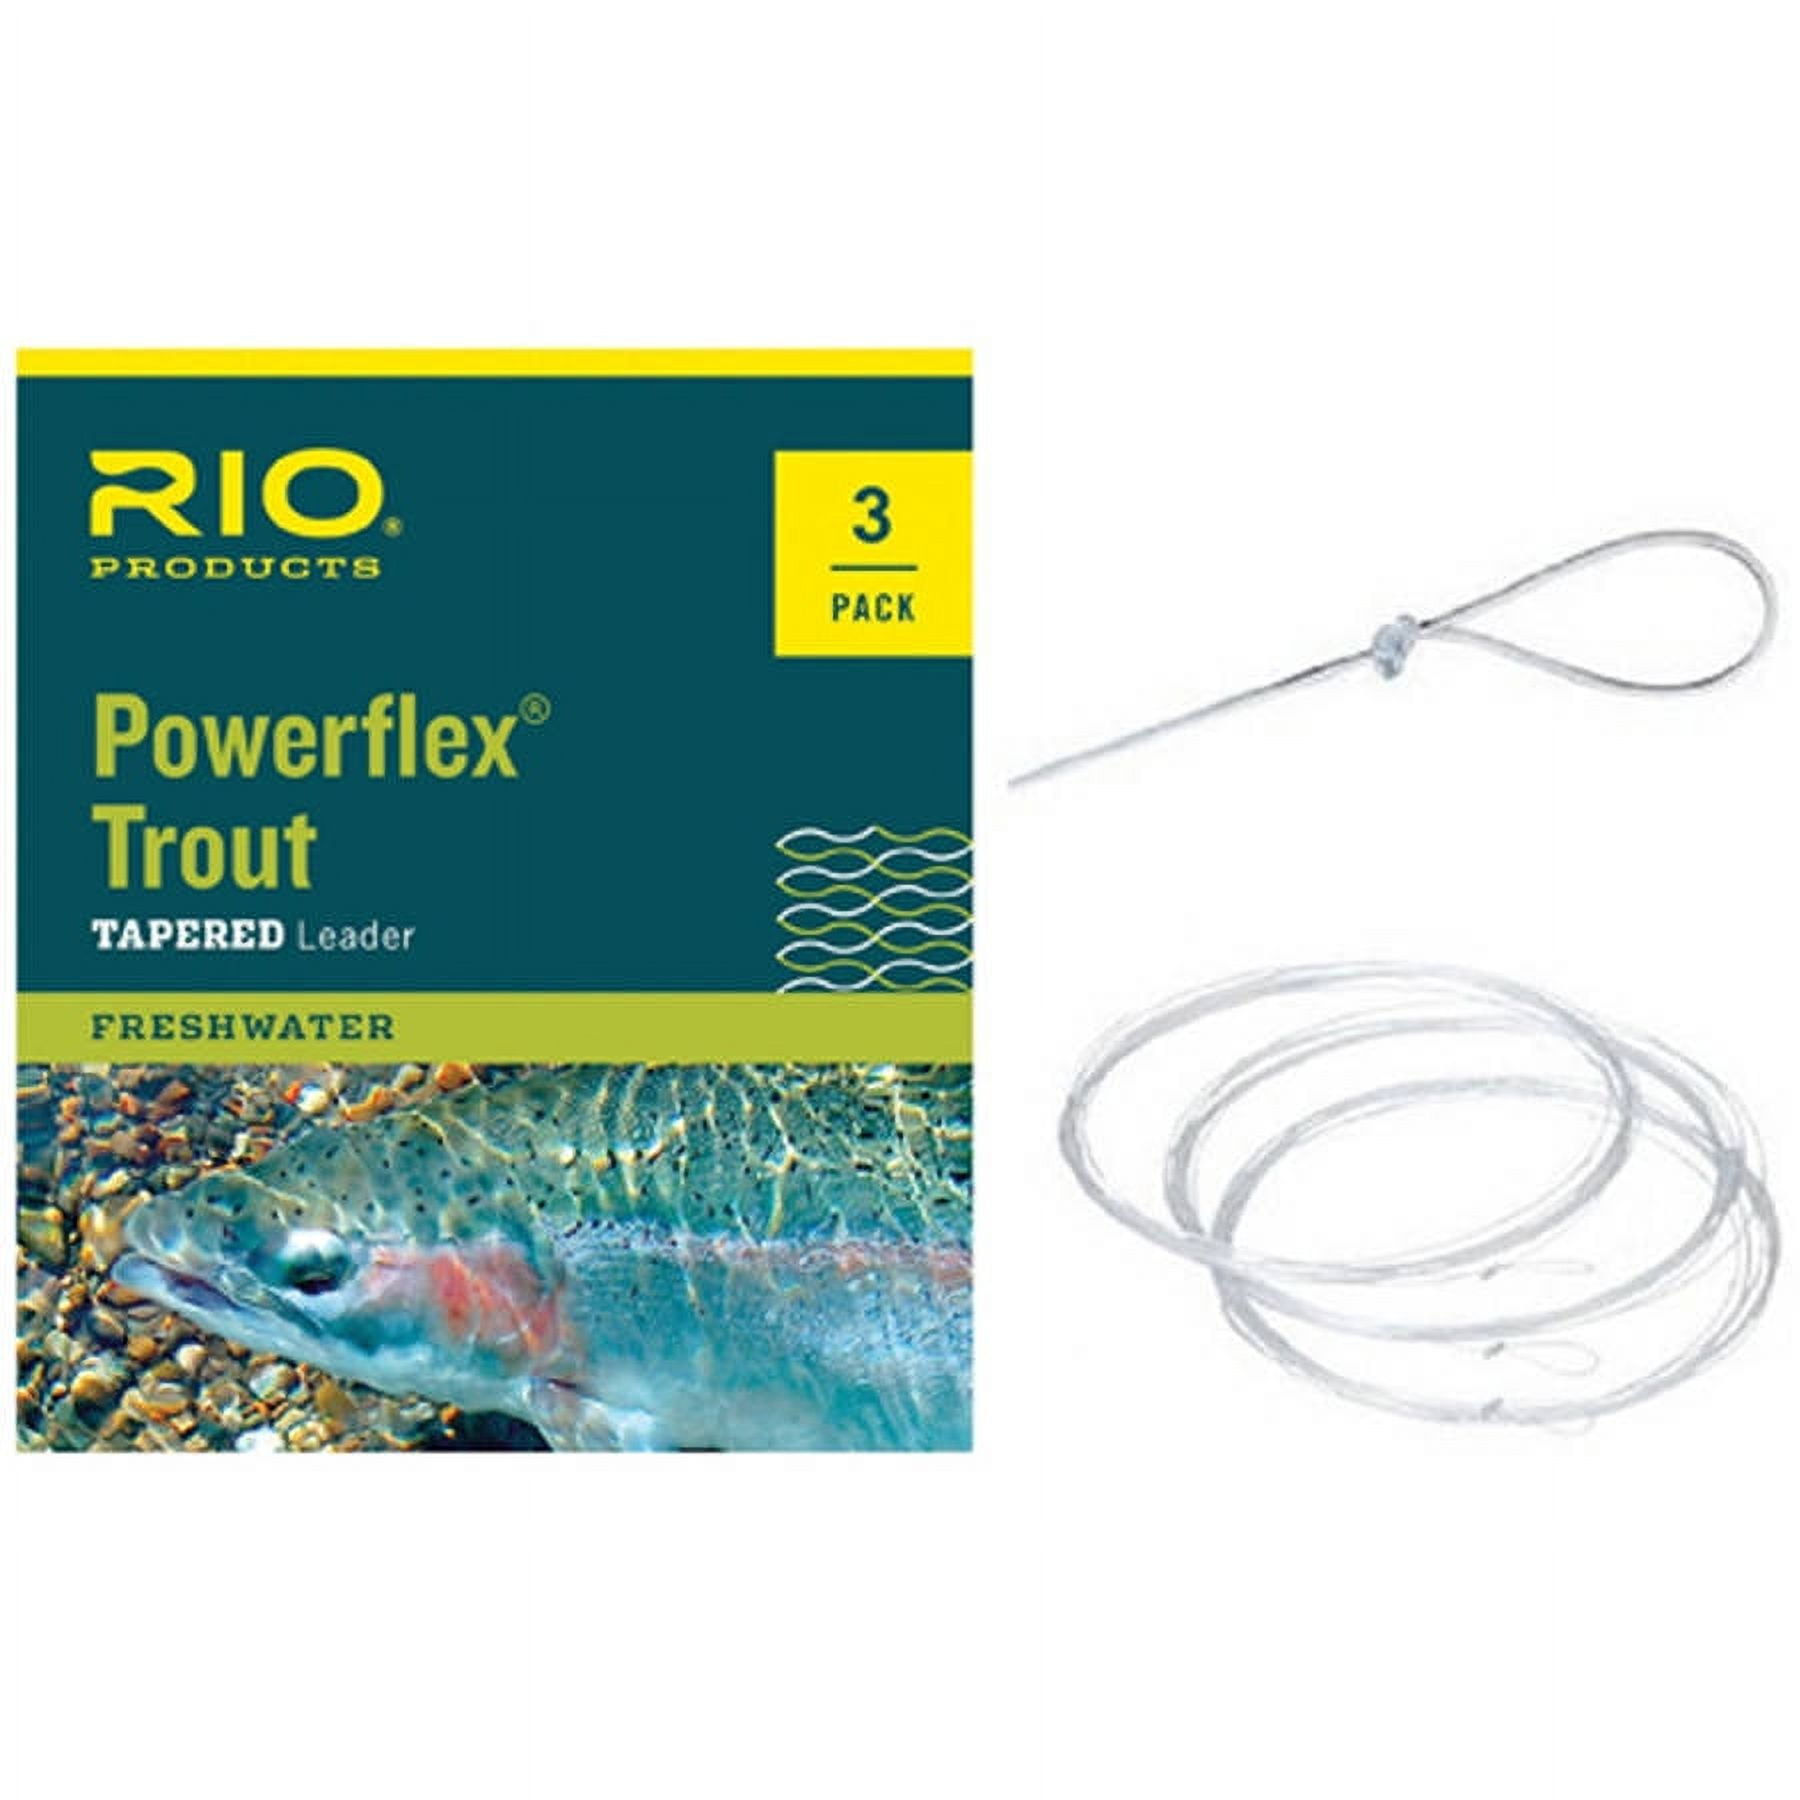 Rio Powerflex Trout 9ft Leader - 3 Pack 4X